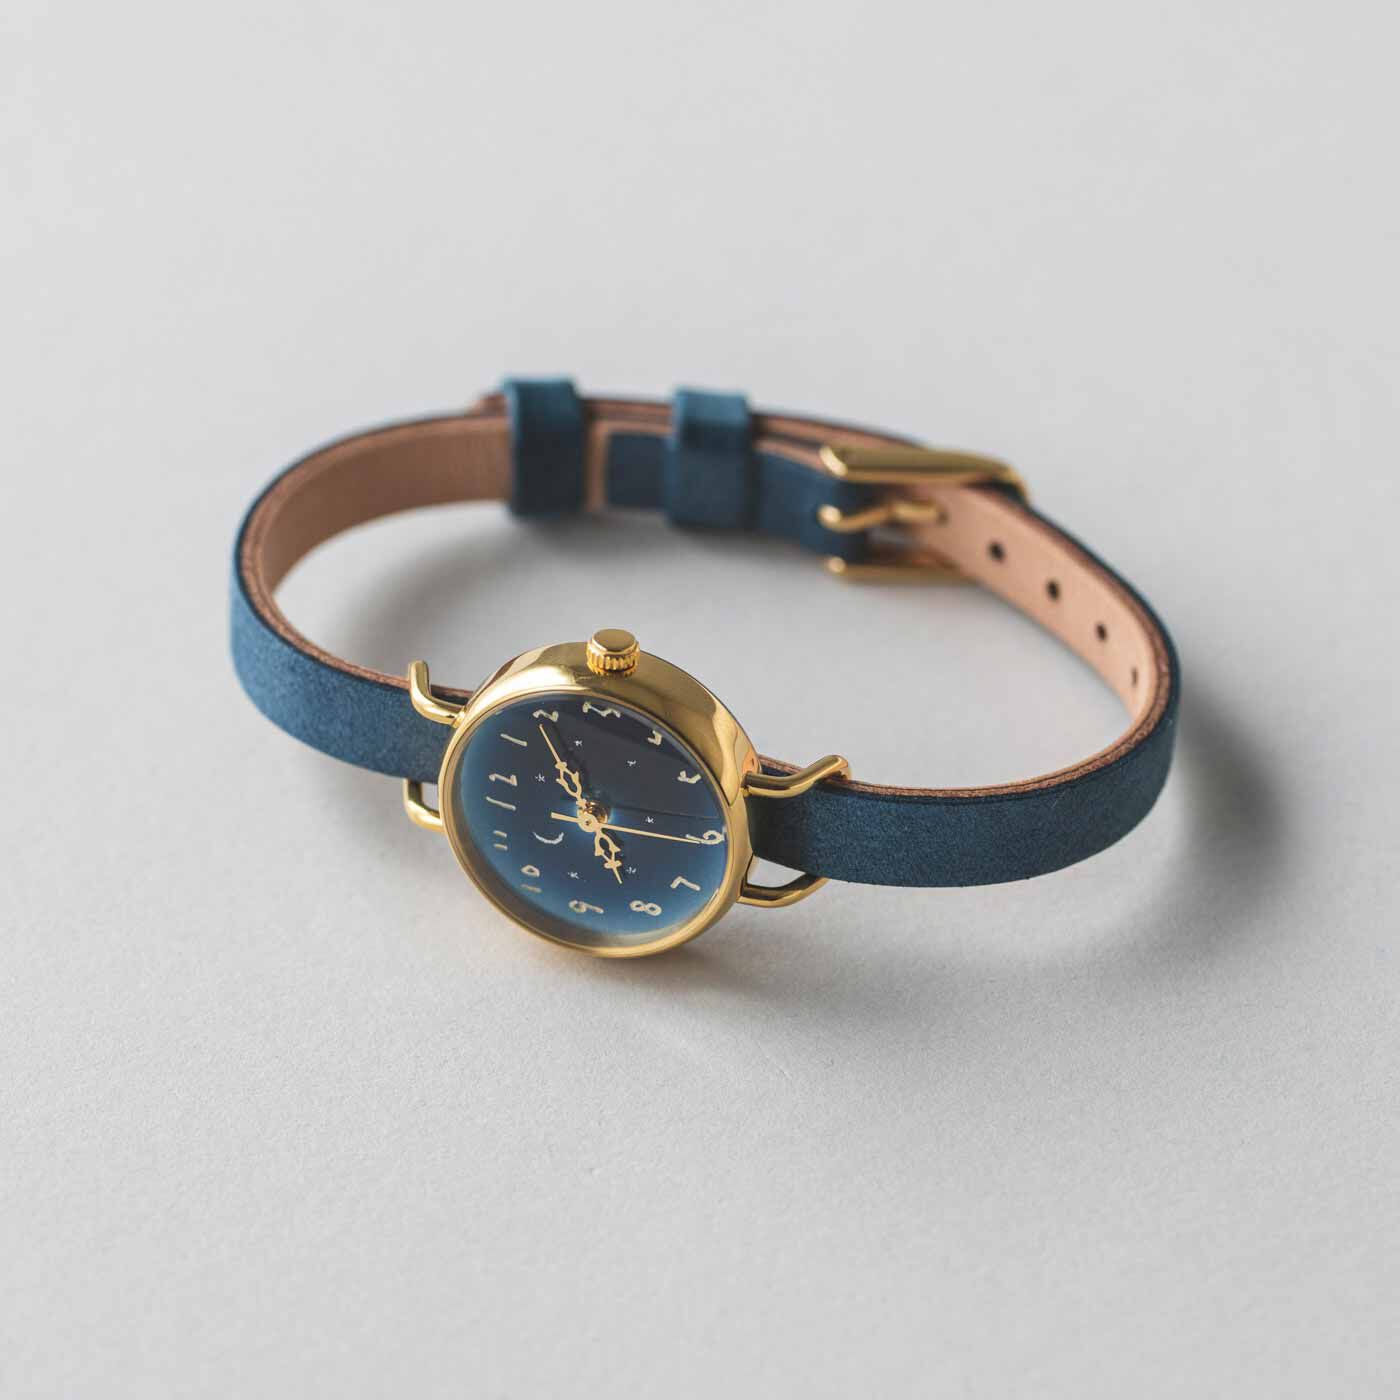 金沢の時計職人が手掛けた 月と星々に見惚れる腕時計〈オールドブルー